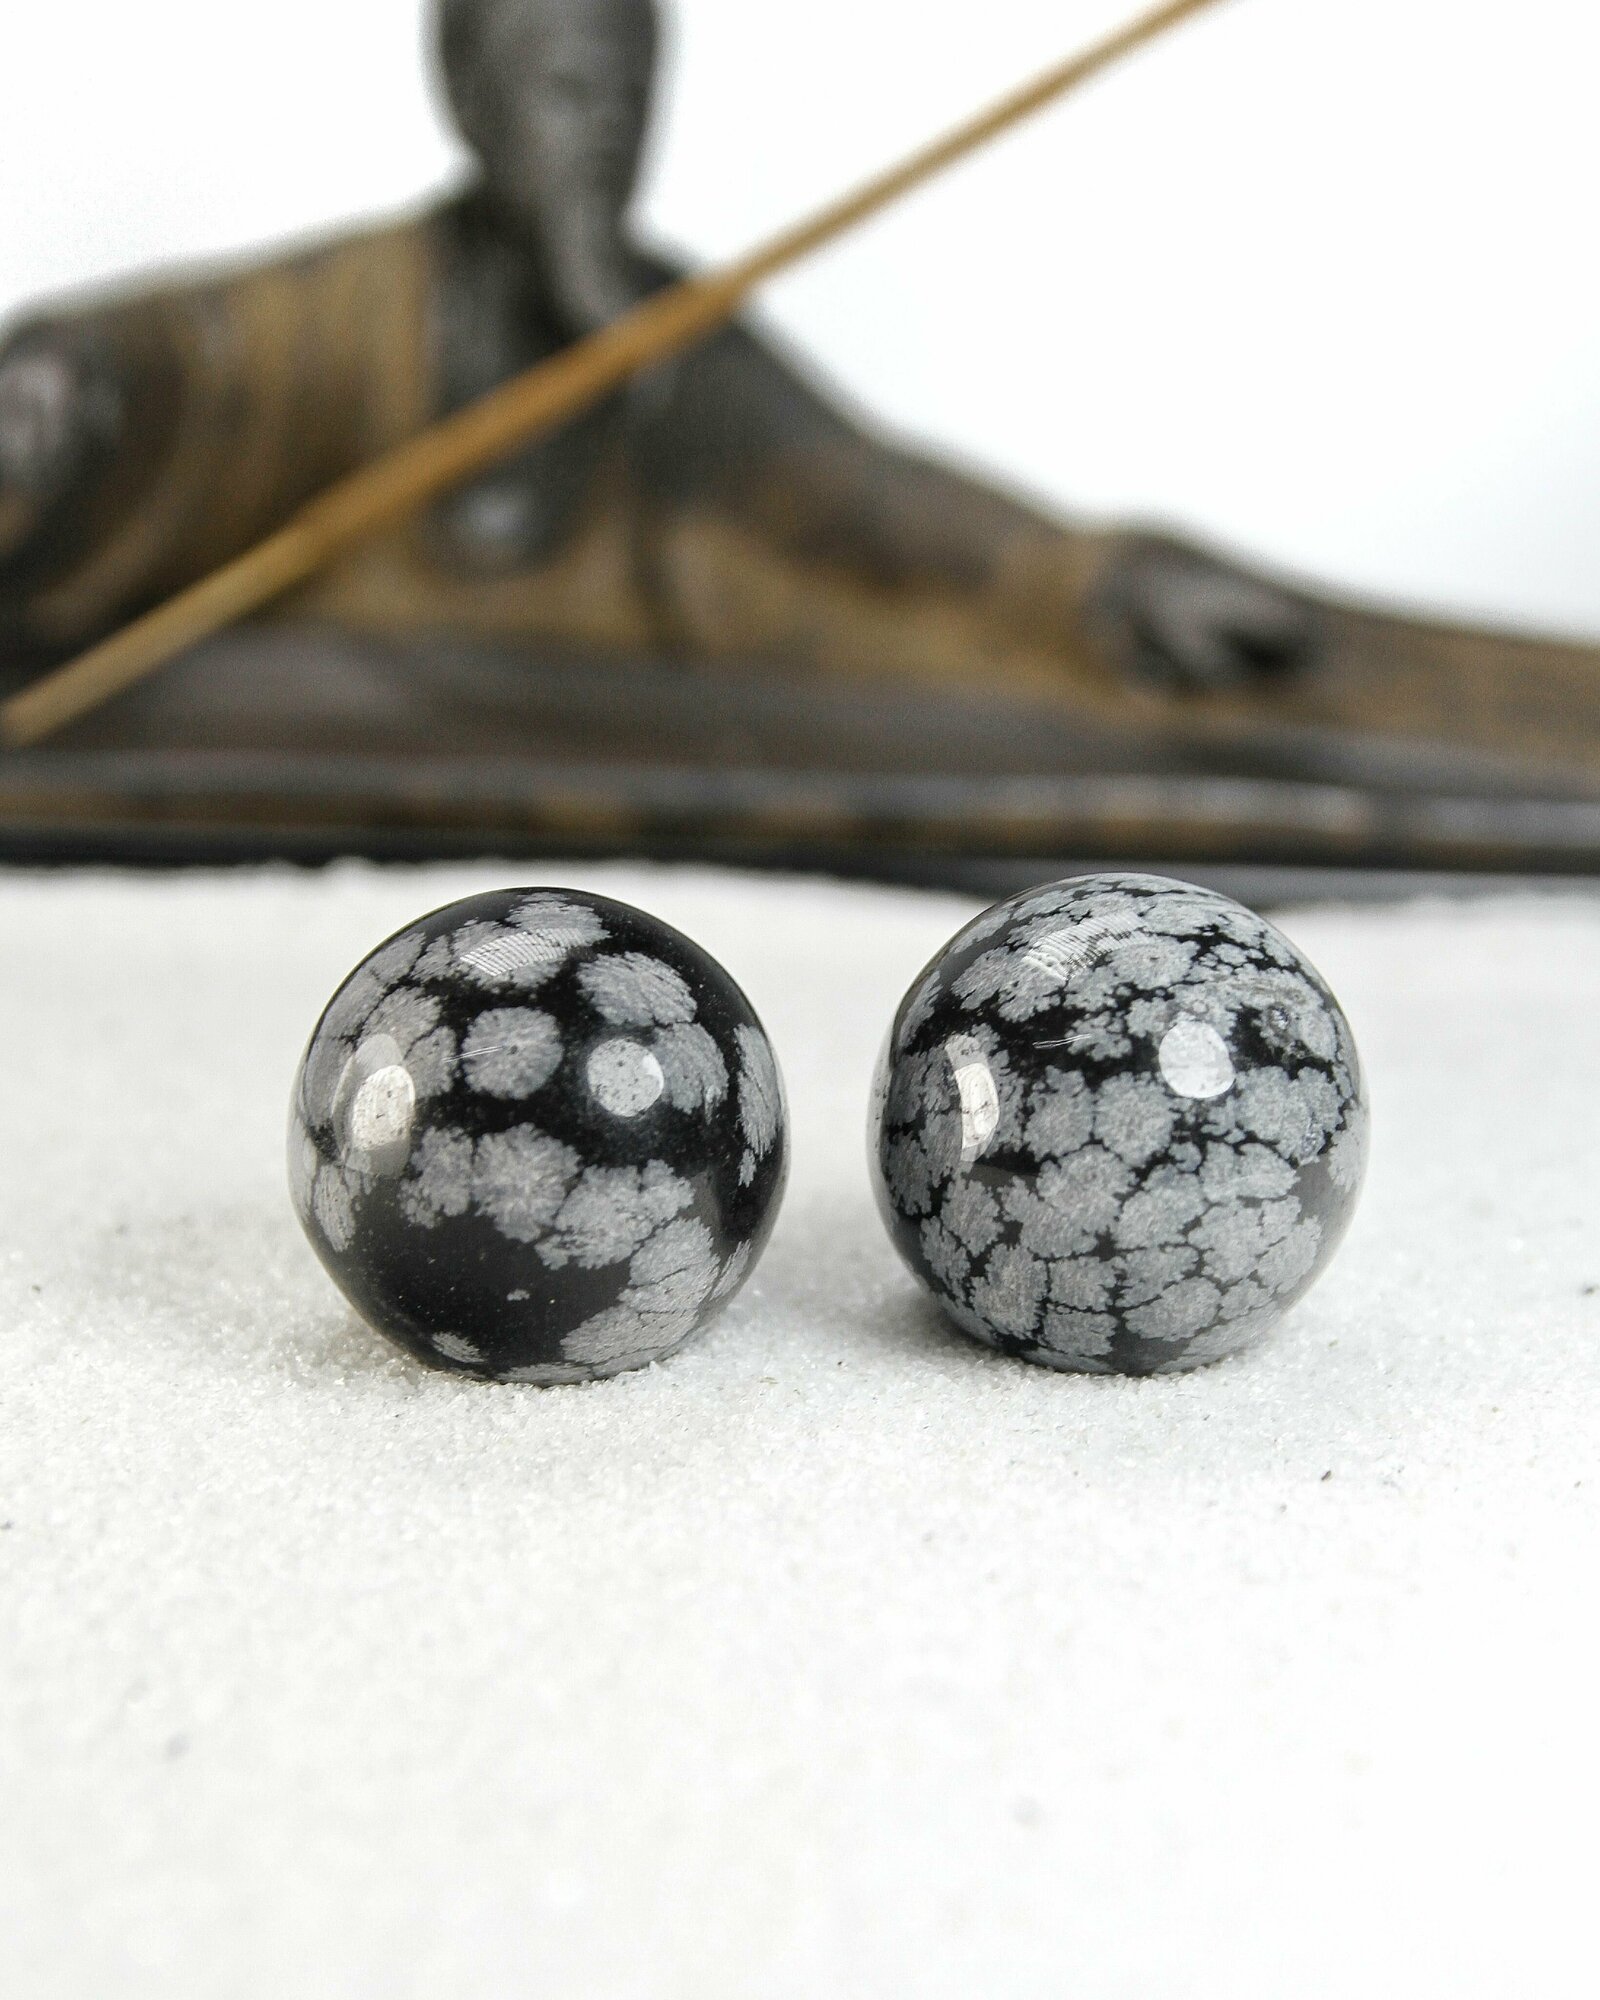 Массажные шары Баодинг Снежный обсидиан - диаметр 29-30 мм натуральный камень 2 шт - для стоунтерапии здоровья и антистресса